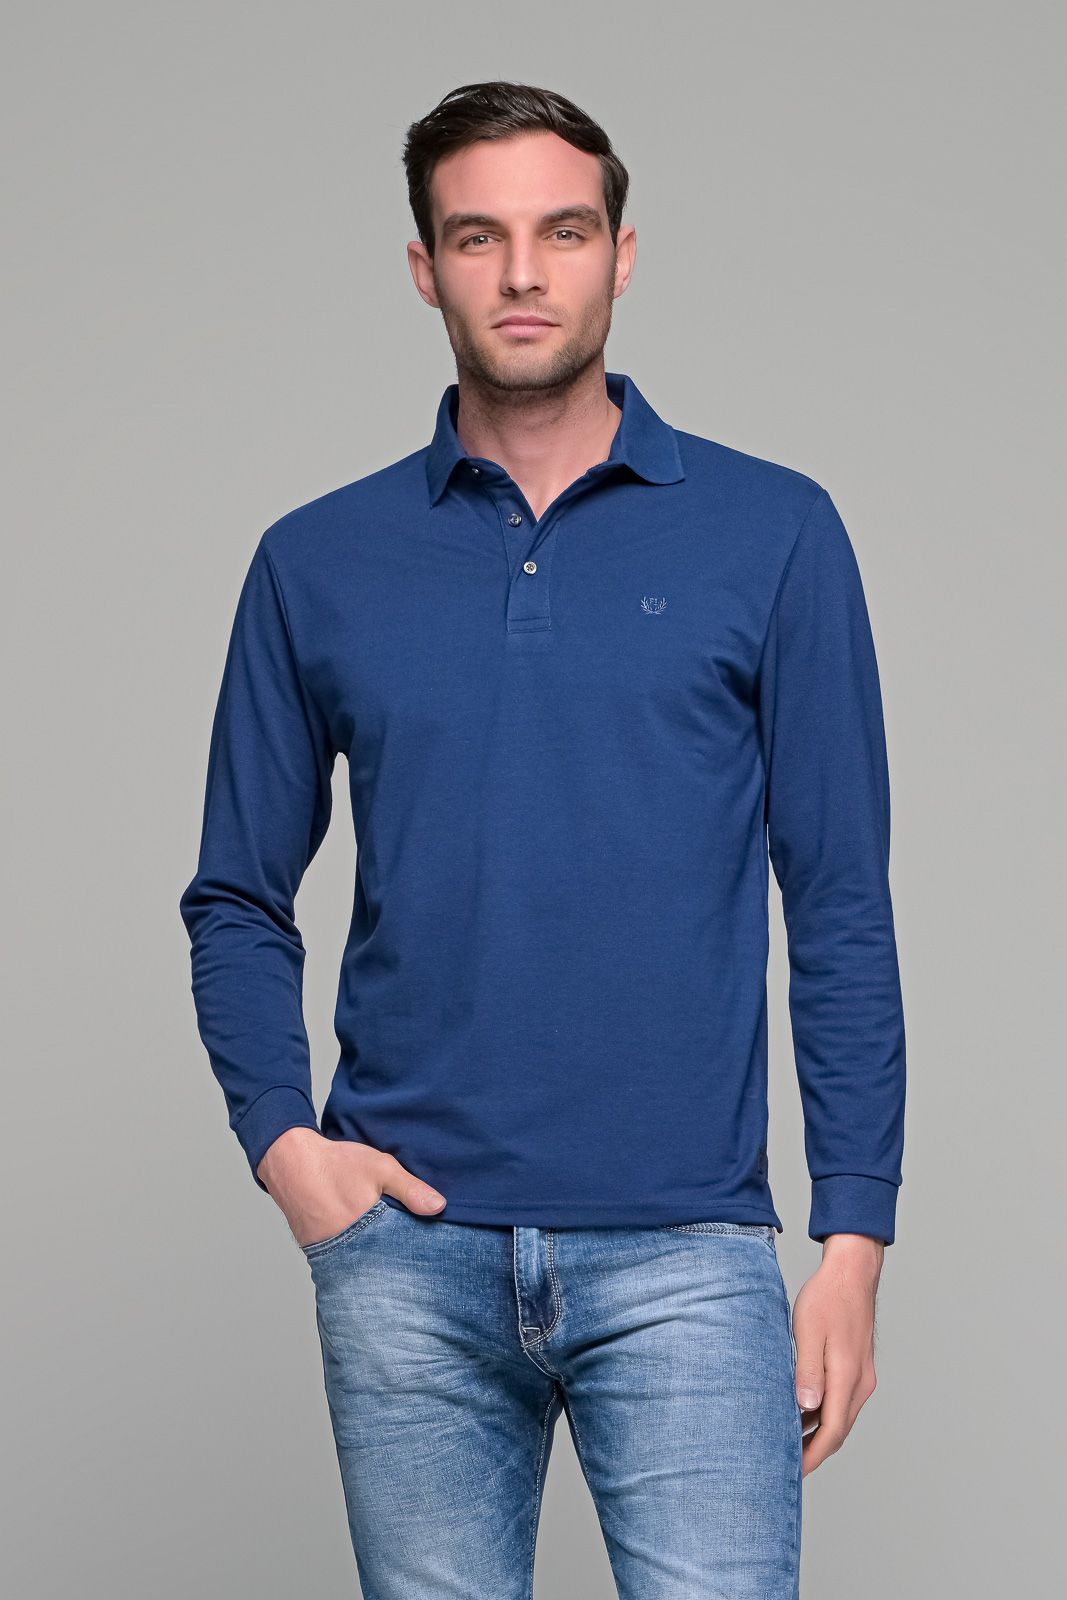 Μπλε royal βαμβακερό ανδρικό πόλο μπλουζάκι FR μακρυμάνικο - Regular fit